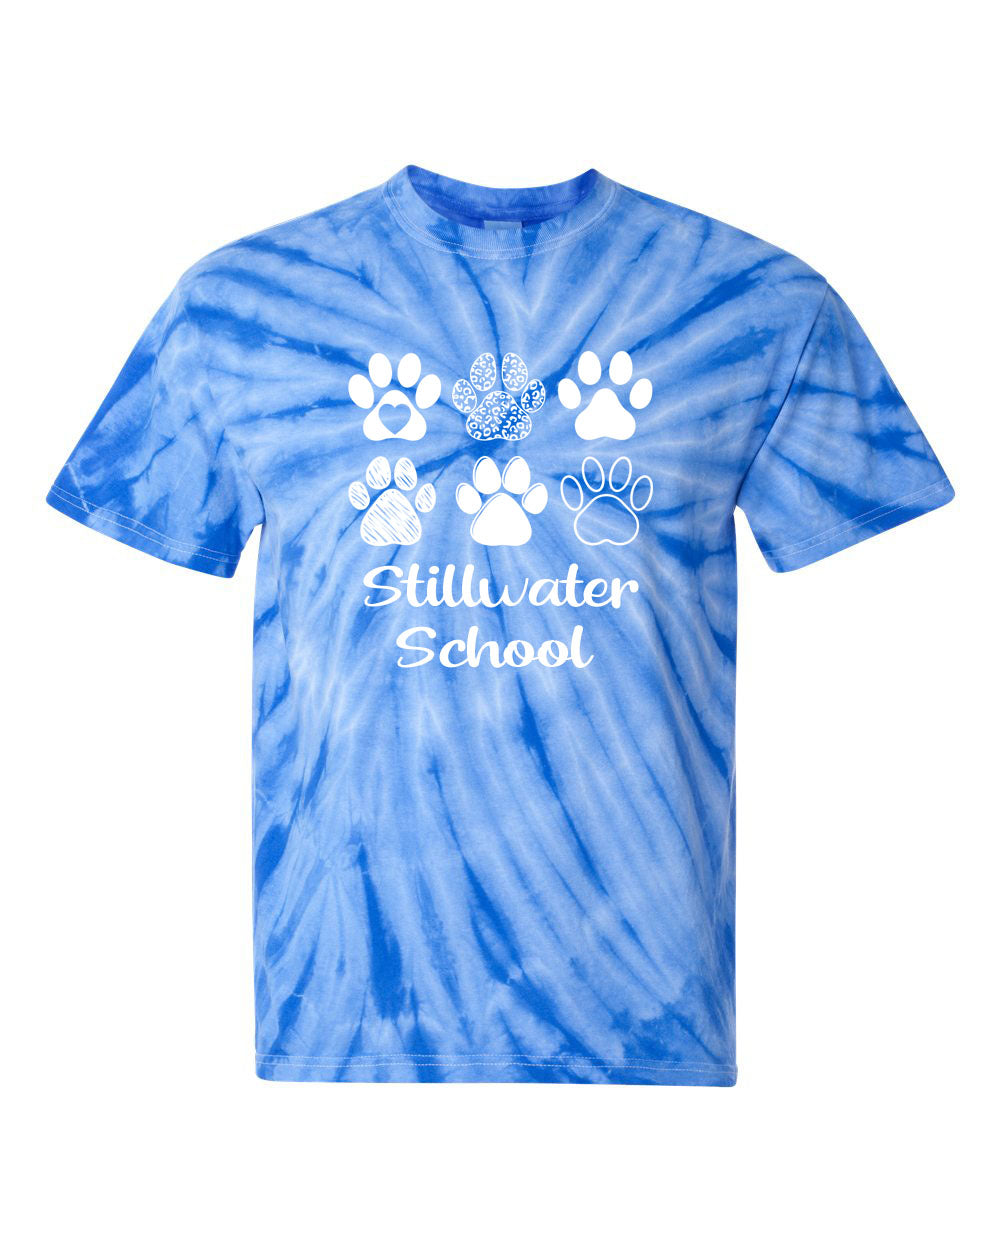 Stillwater Tie Dye t-shirt Design 20